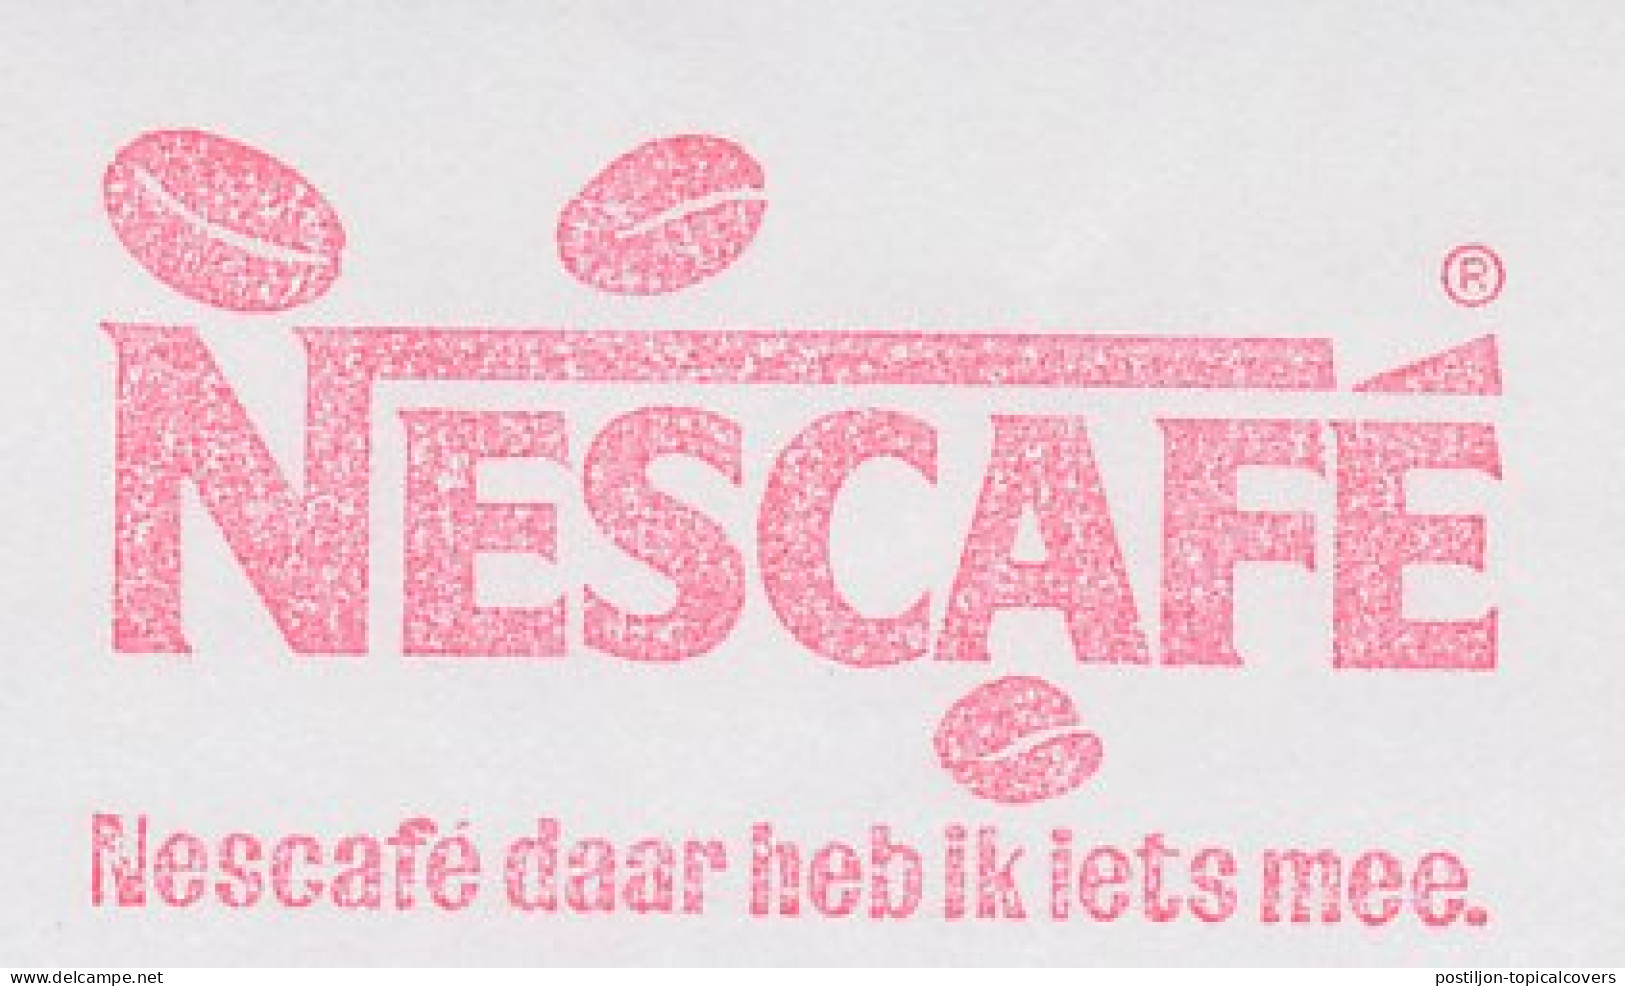 Meter Cut Netherlands 1988 Coffee - Nescafe - Coffee Bean - Altri & Non Classificati